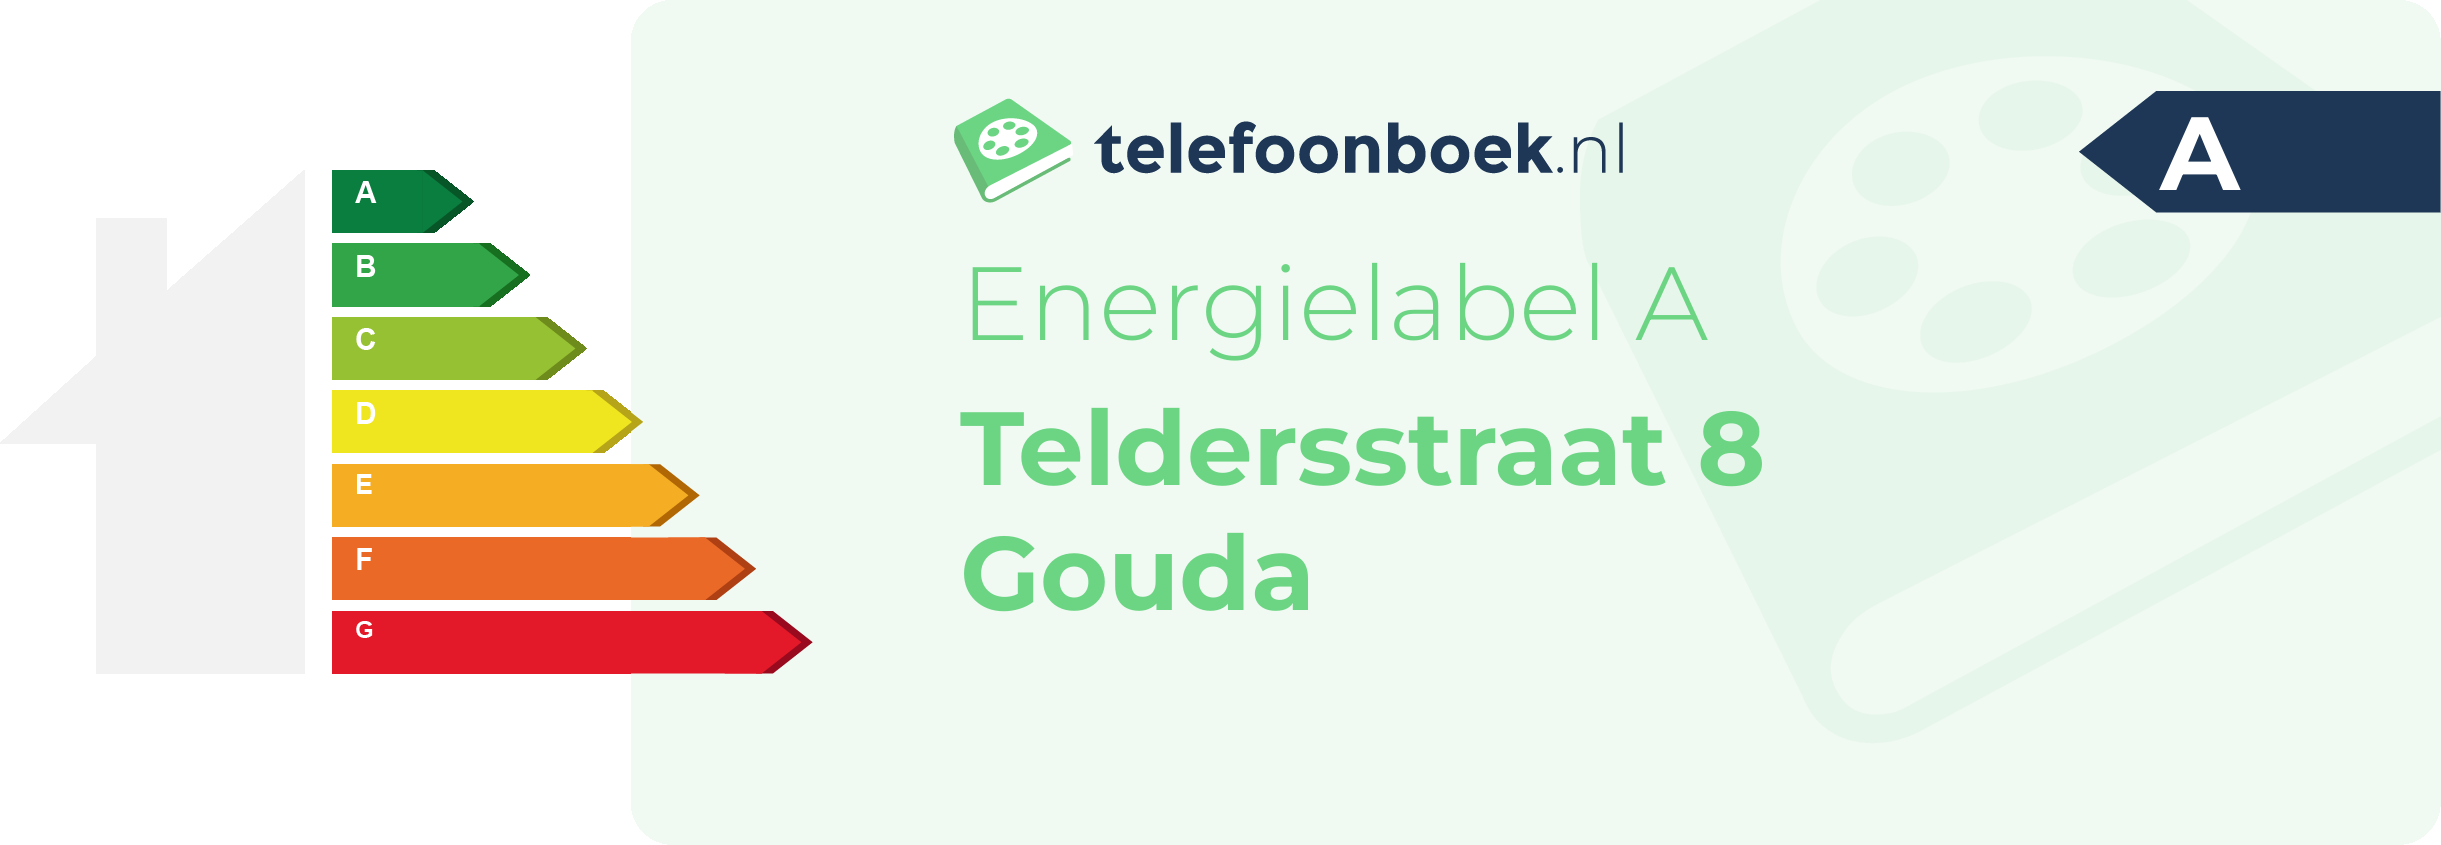 Energielabel Teldersstraat 8 Gouda